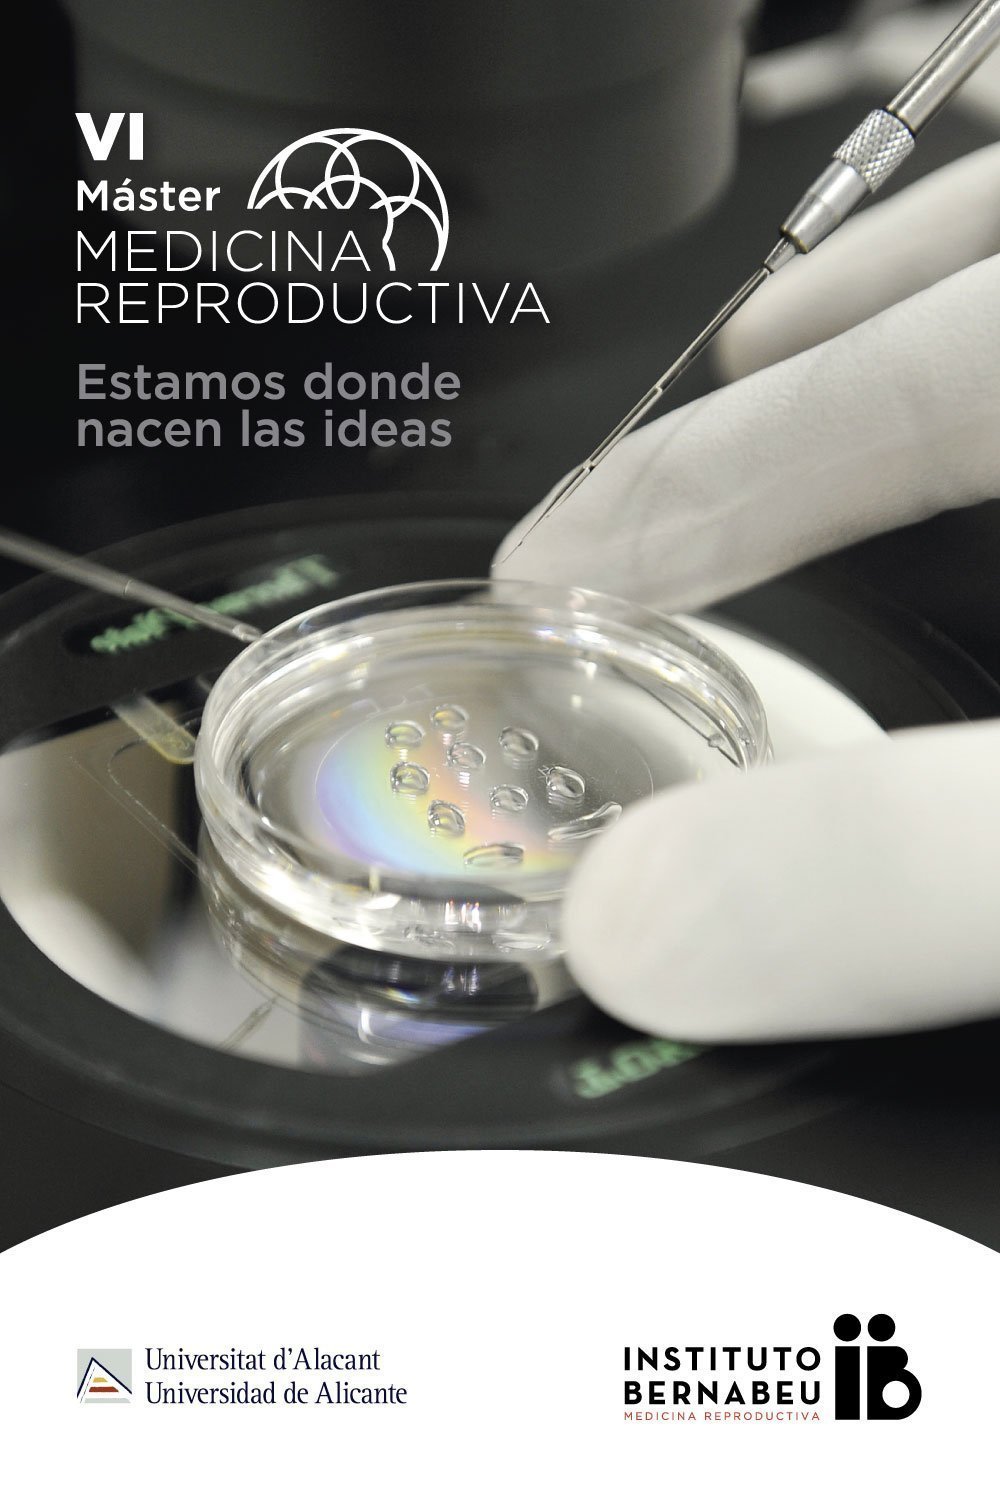 VI Instituto Bernabeu-University of Alicante Master’s Degree in Reproductive Medicine